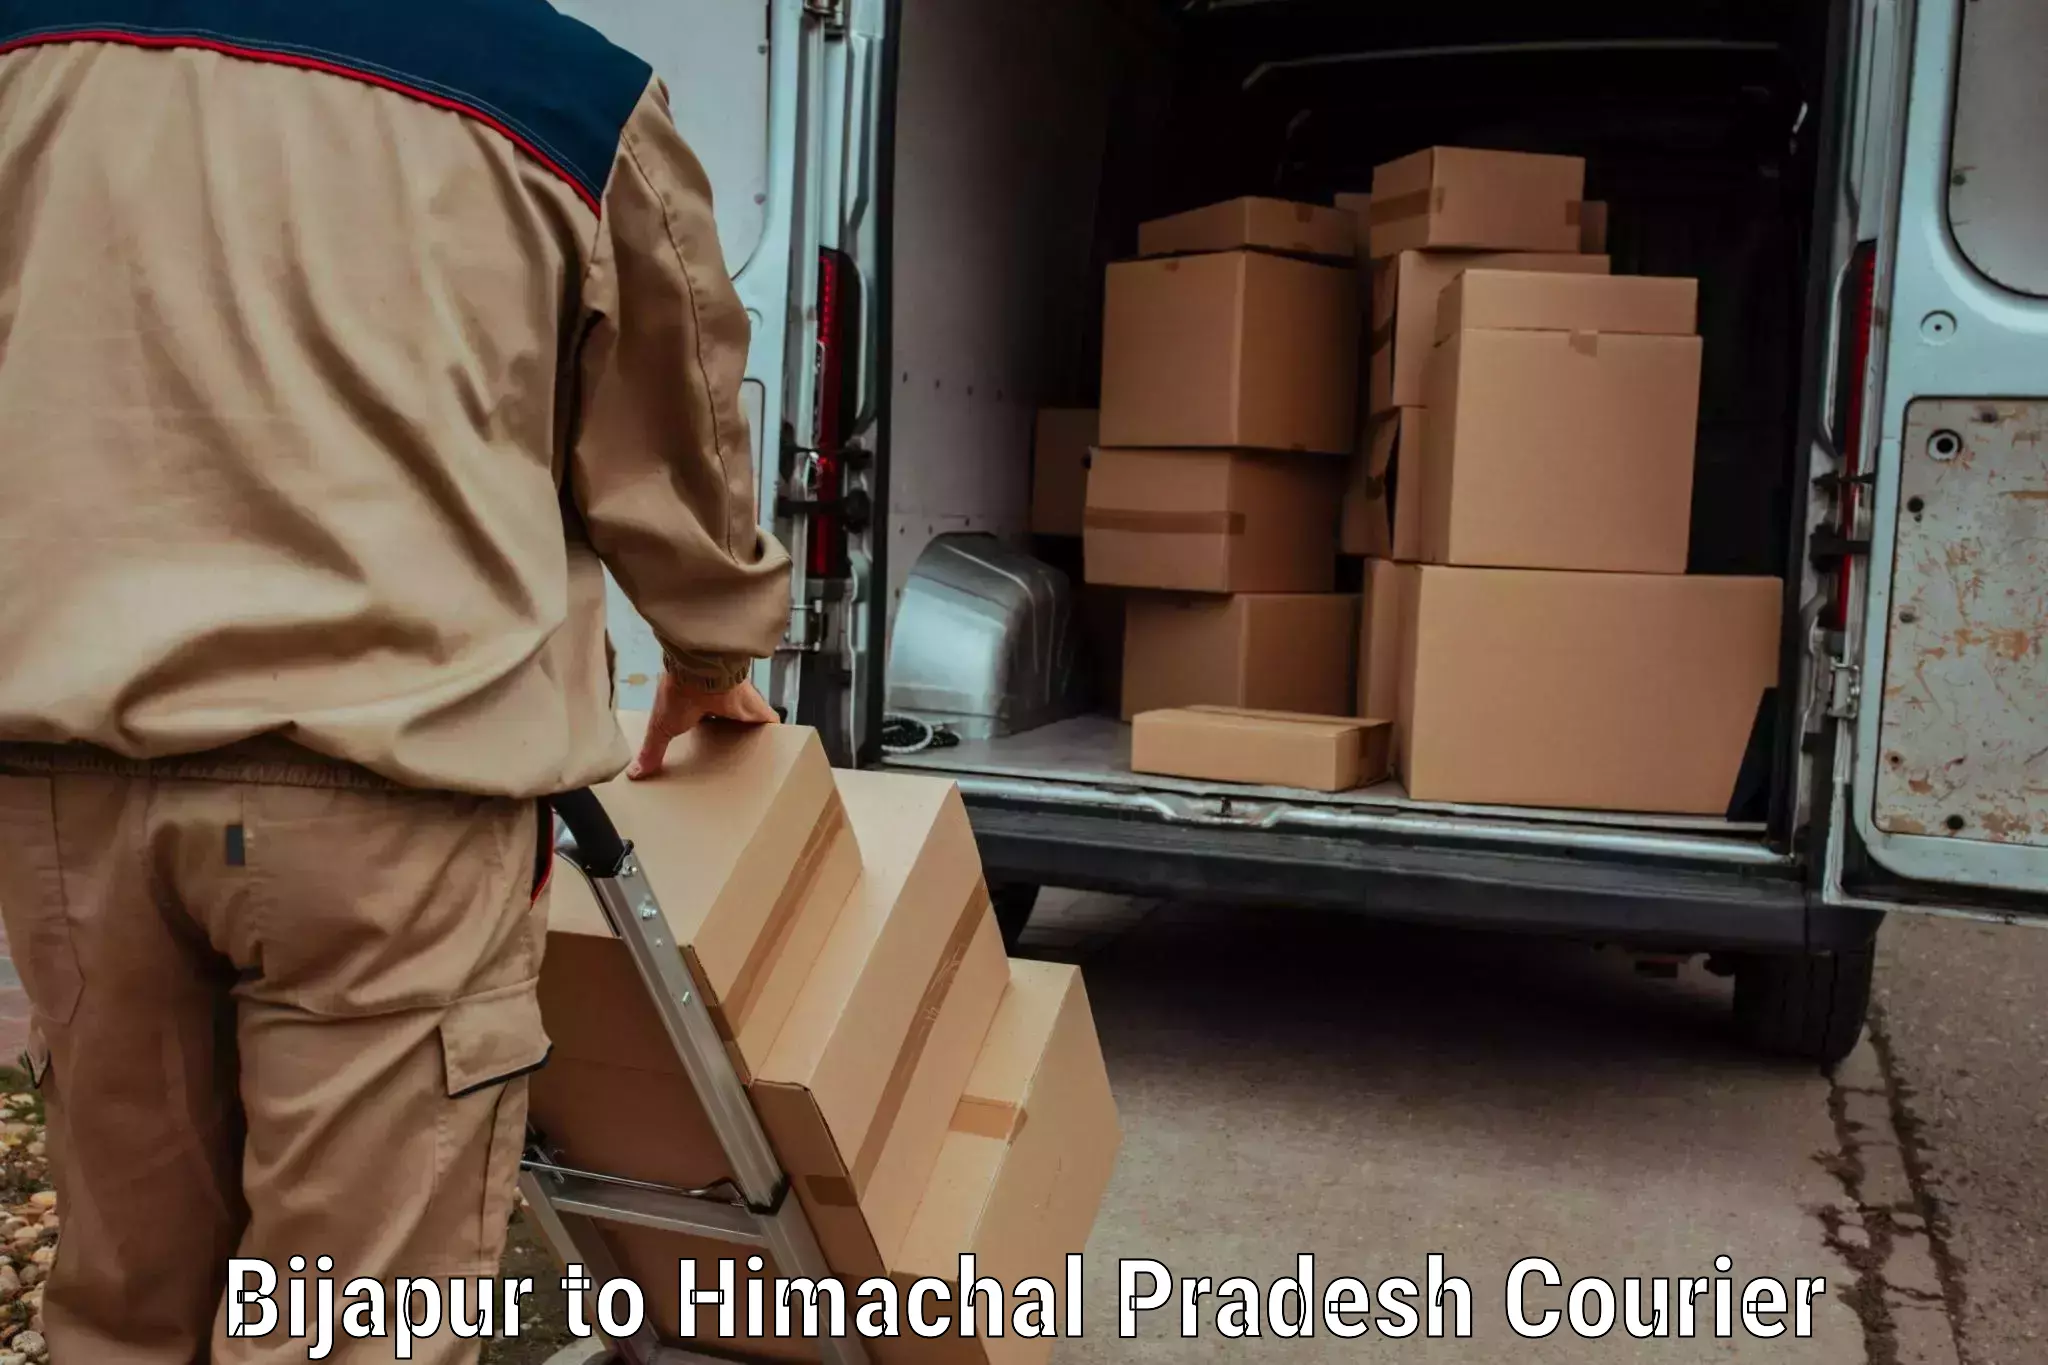 Next day courier Bijapur to Ratnari Shimla